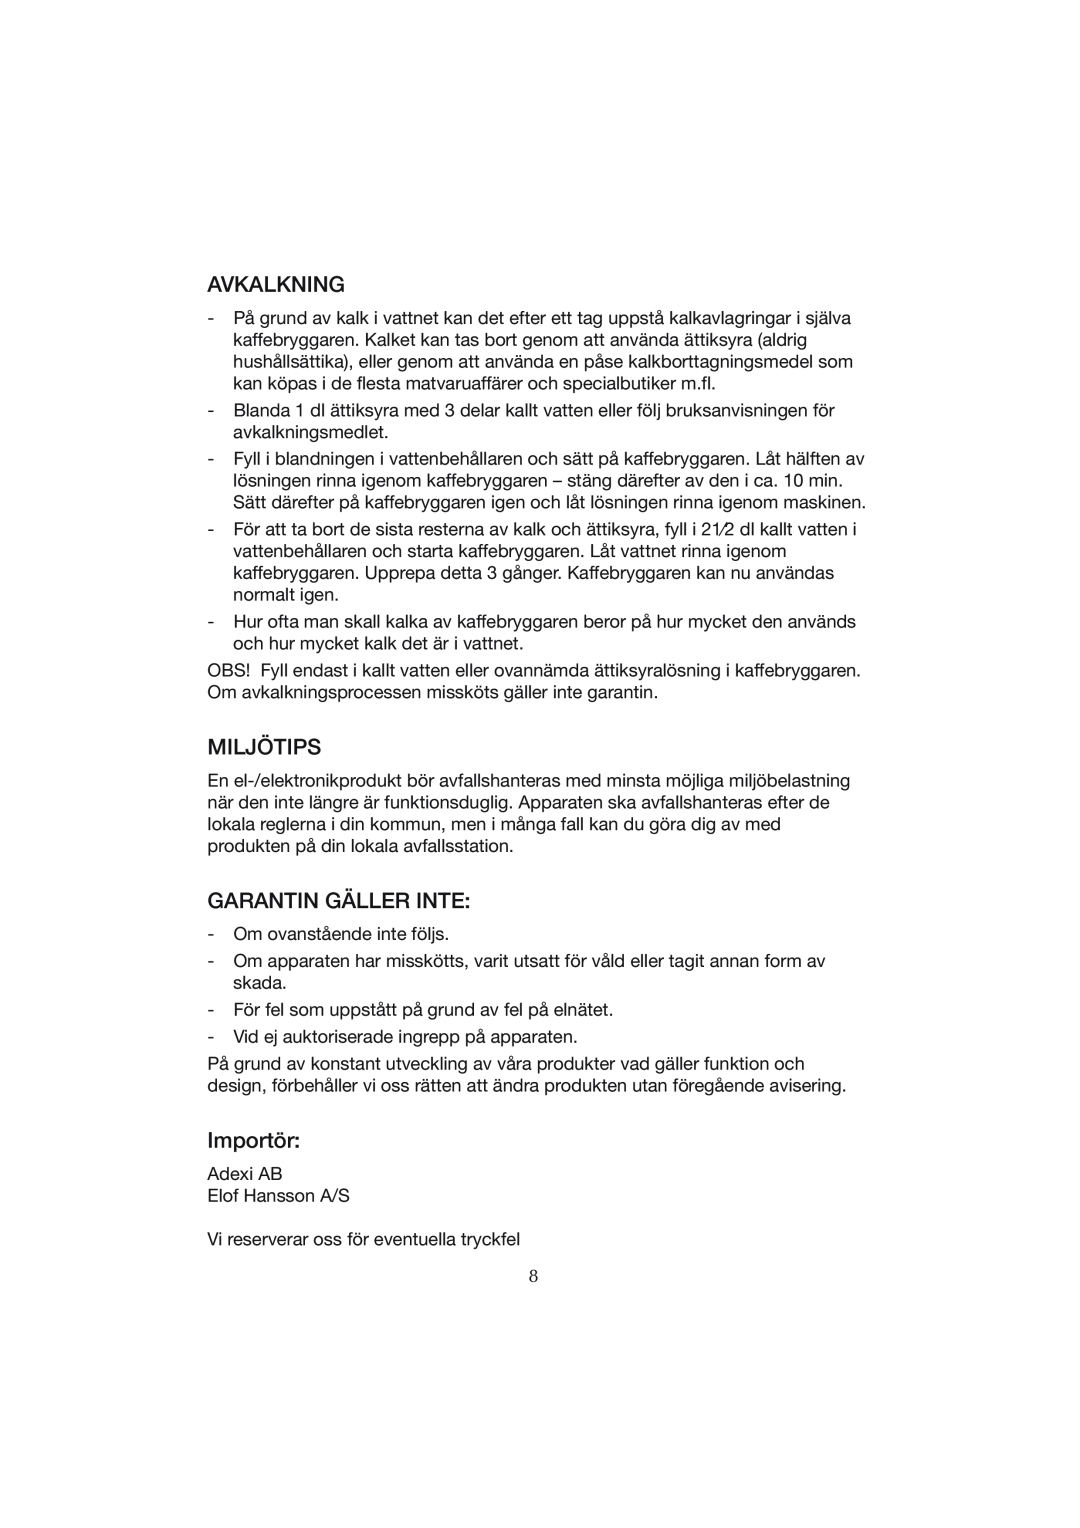 Melissa CM0801 manual Avkalkning, Miljötips, Garantin Gäller Inte, Importör 